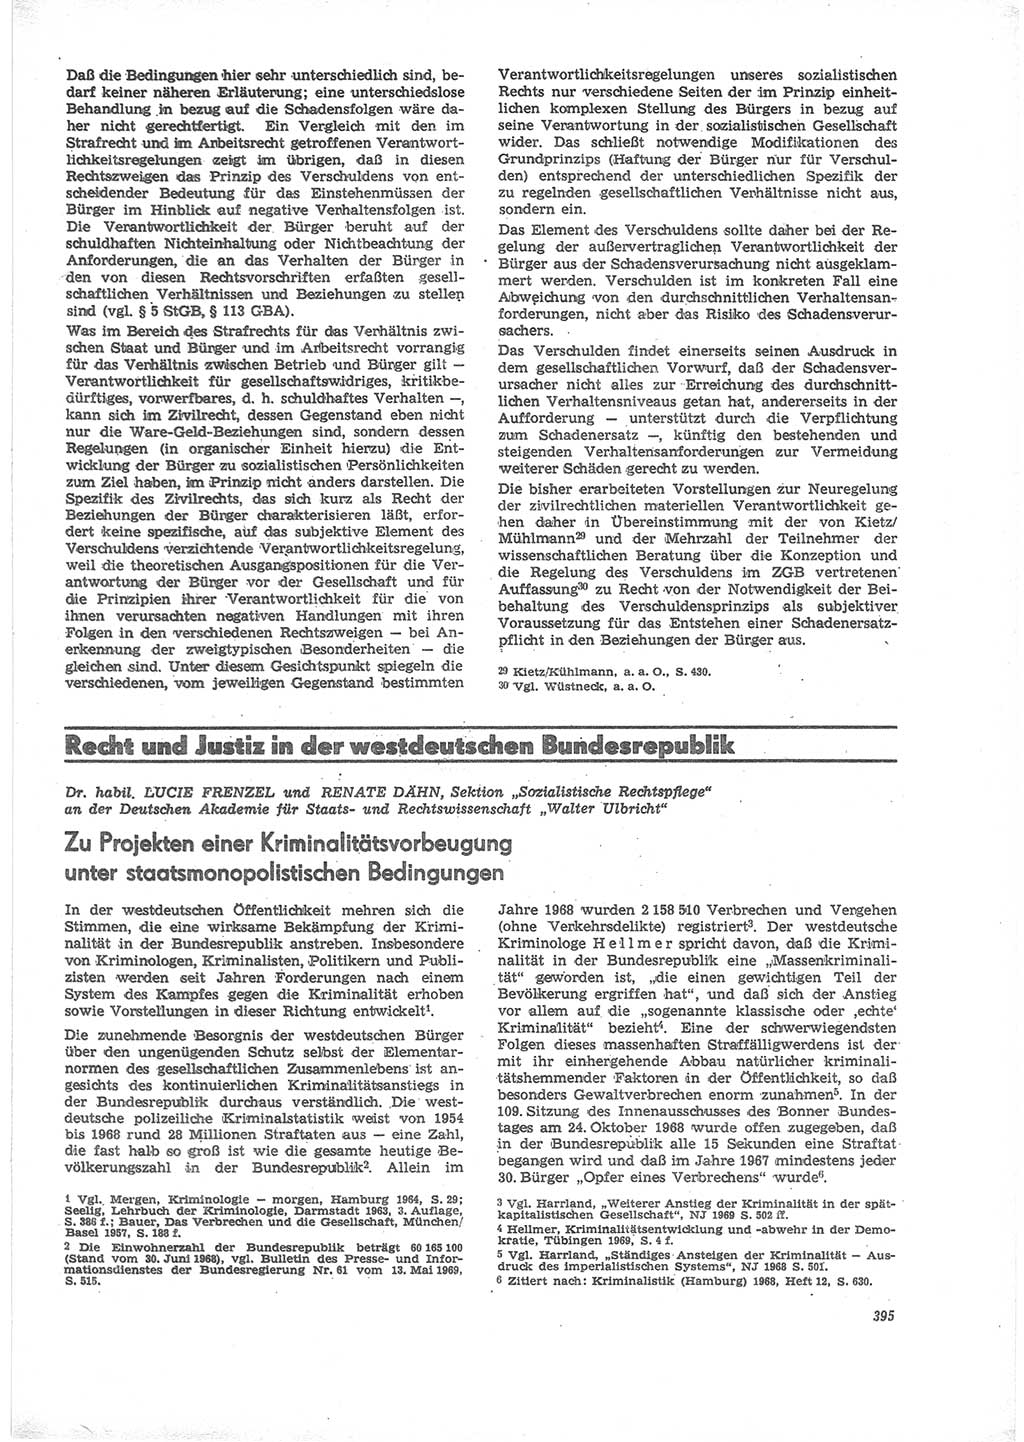 Neue Justiz (NJ), Zeitschrift für Recht und Rechtswissenschaft [Deutsche Demokratische Republik (DDR)], 24. Jahrgang 1970, Seite 395 (NJ DDR 1970, S. 395)